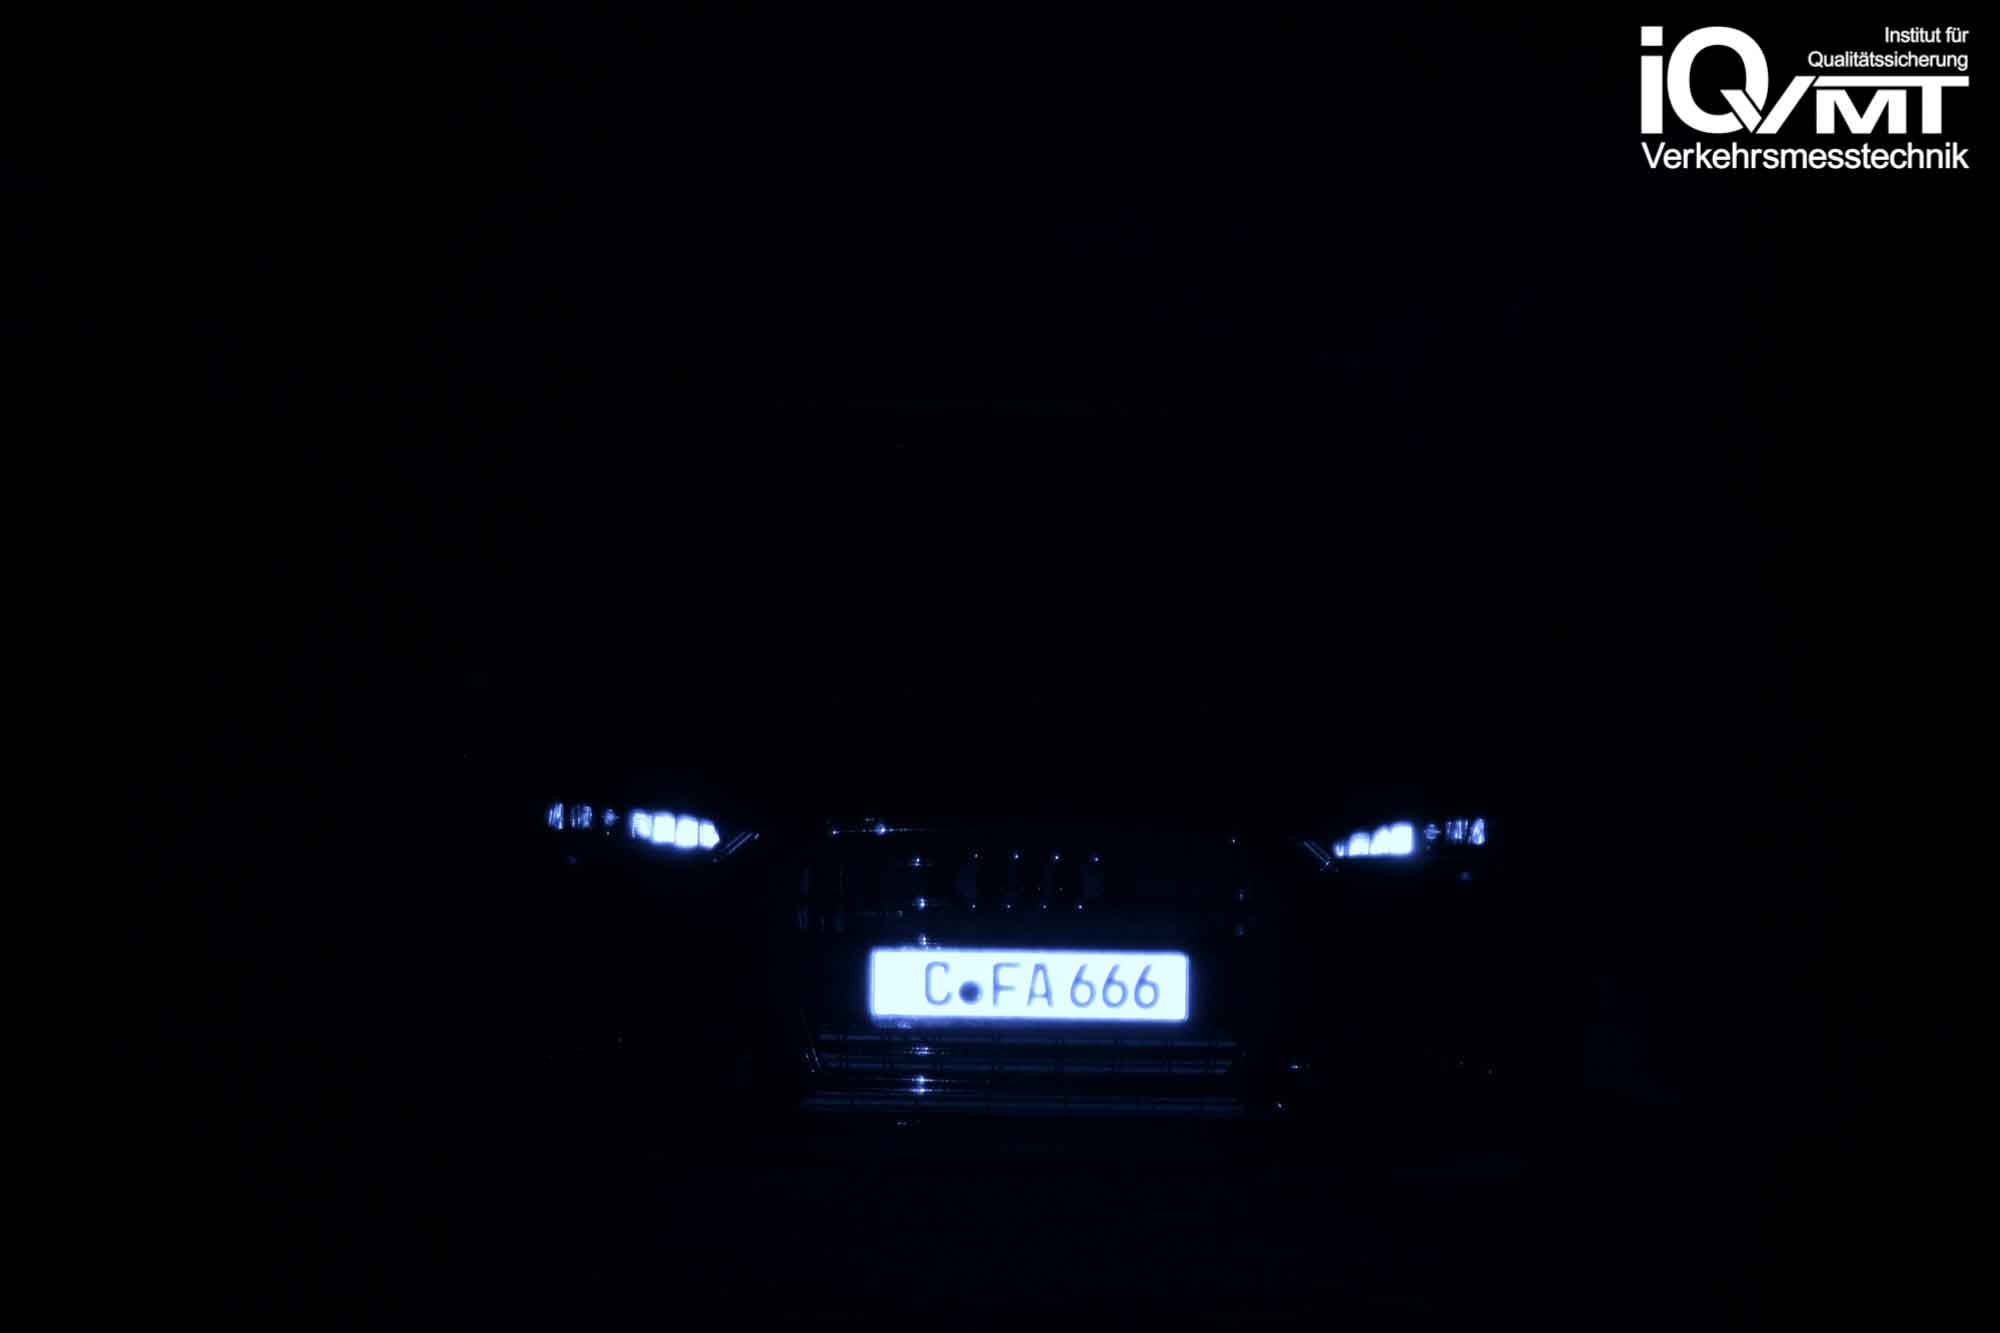 iQvmt - Infrarotfoto zur Refektivität der messrelevanten IR-Laserstrahlung am  Audi A6